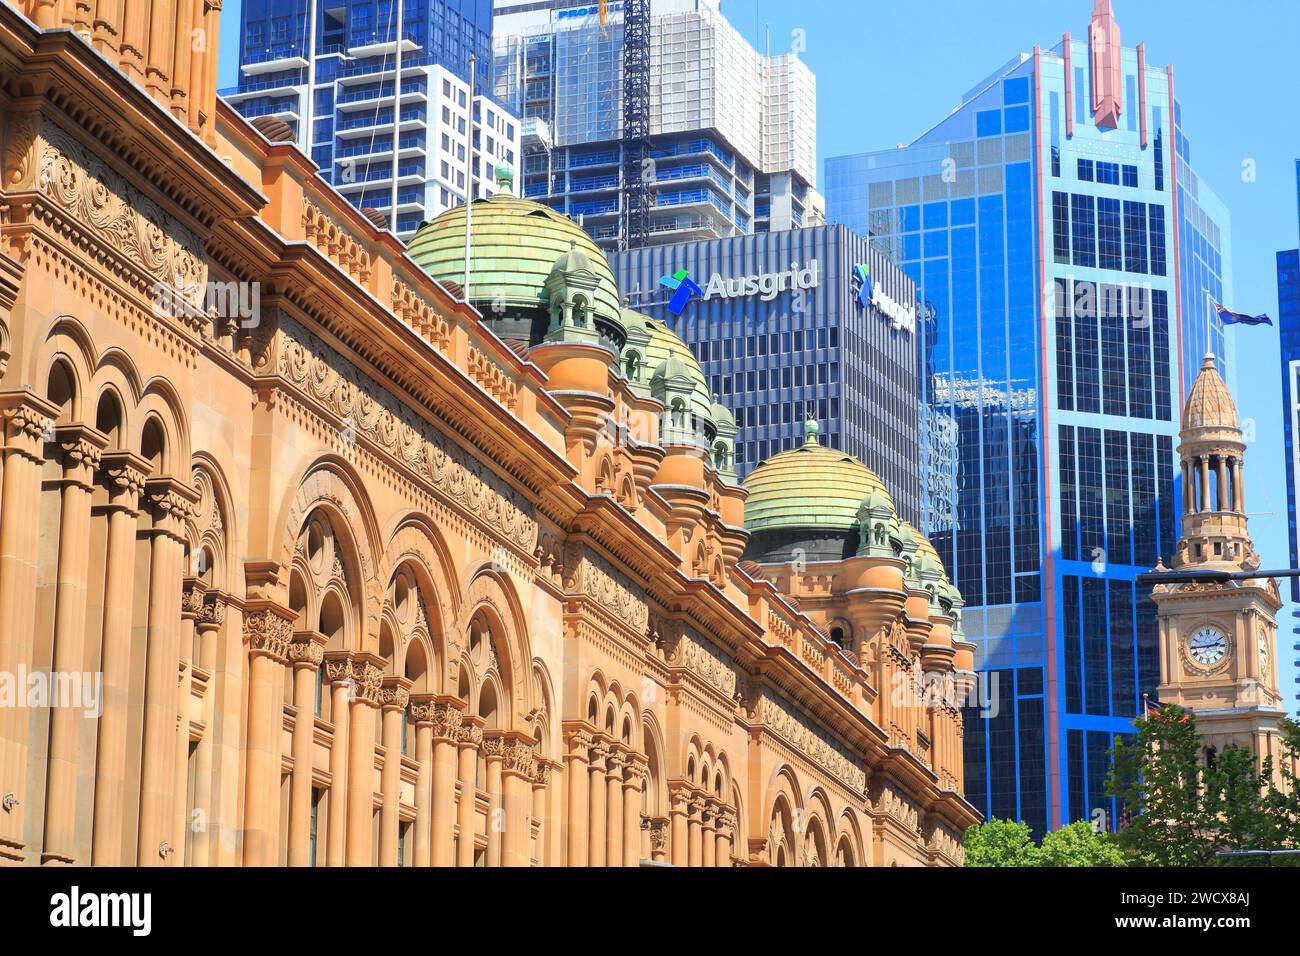 Australie, Nouvelle-Galles du Sud, Sydney, Central Business District (CBD), George Street, Queen Victoria Building (QVB) de la fin du 19e siècle avec les immeubles de bureaux en arrière-plan Banque D'Images